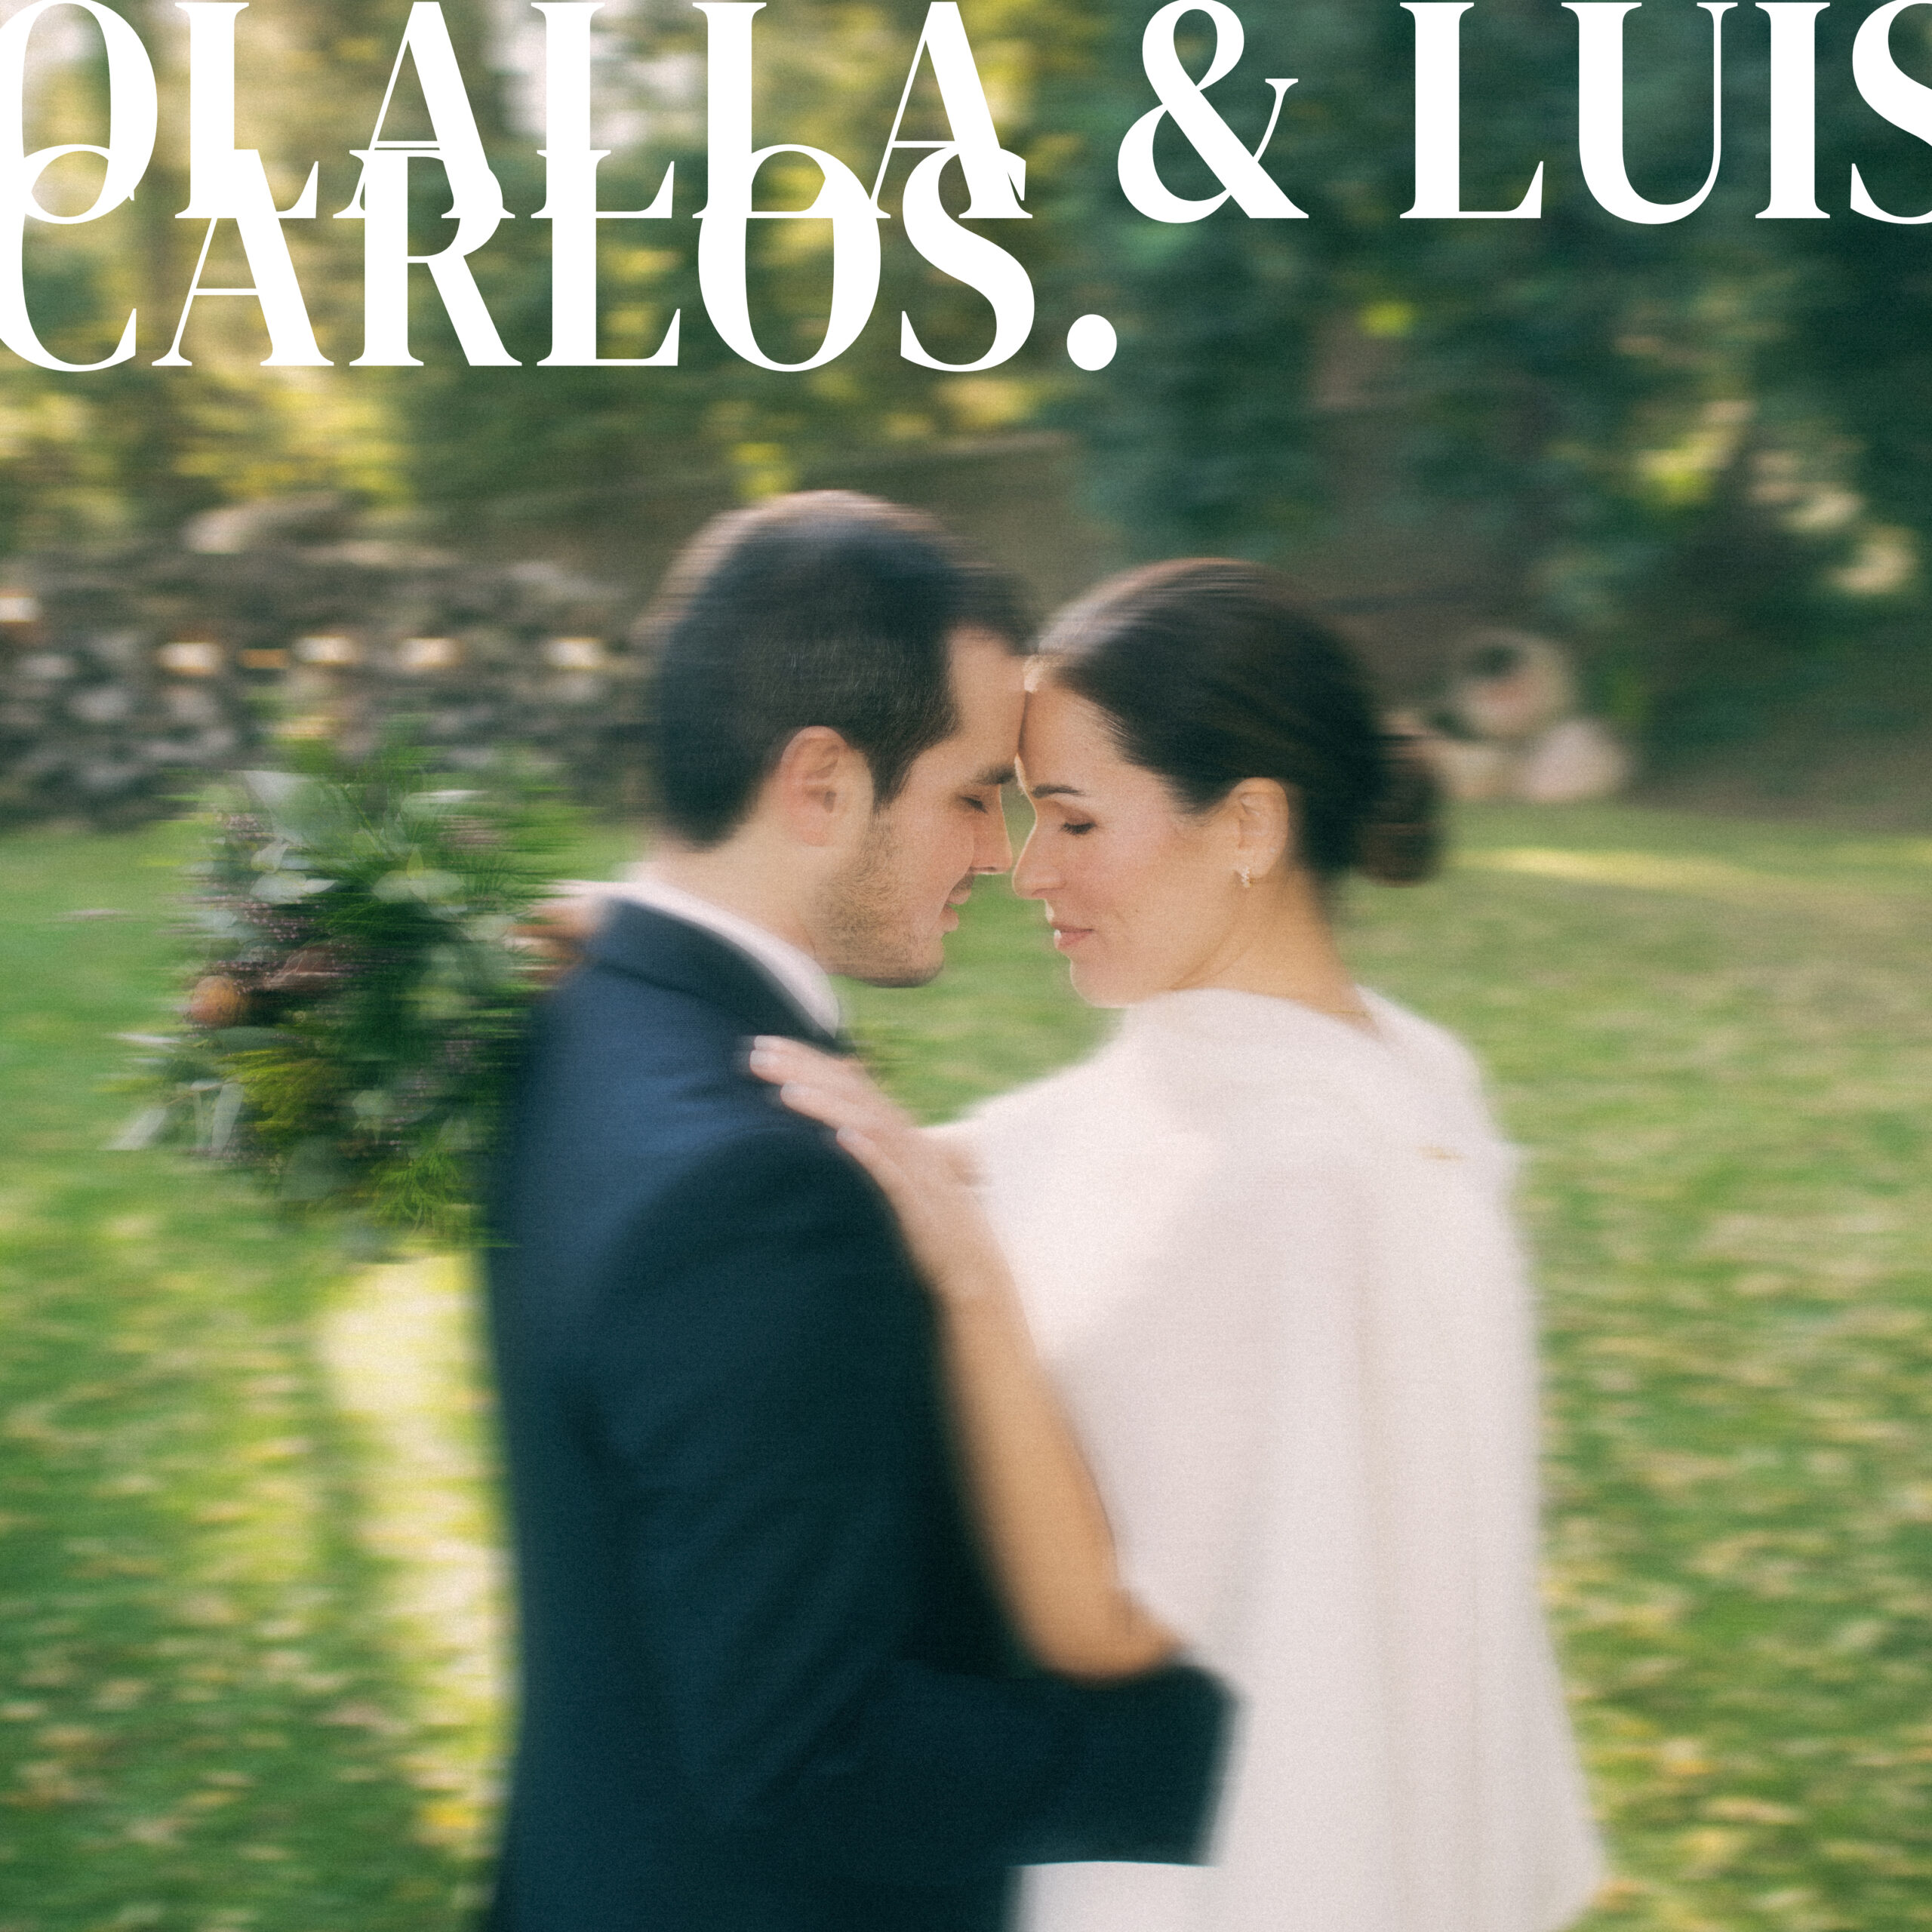 Wedding Olalla y Luis Carlos en Barcelona